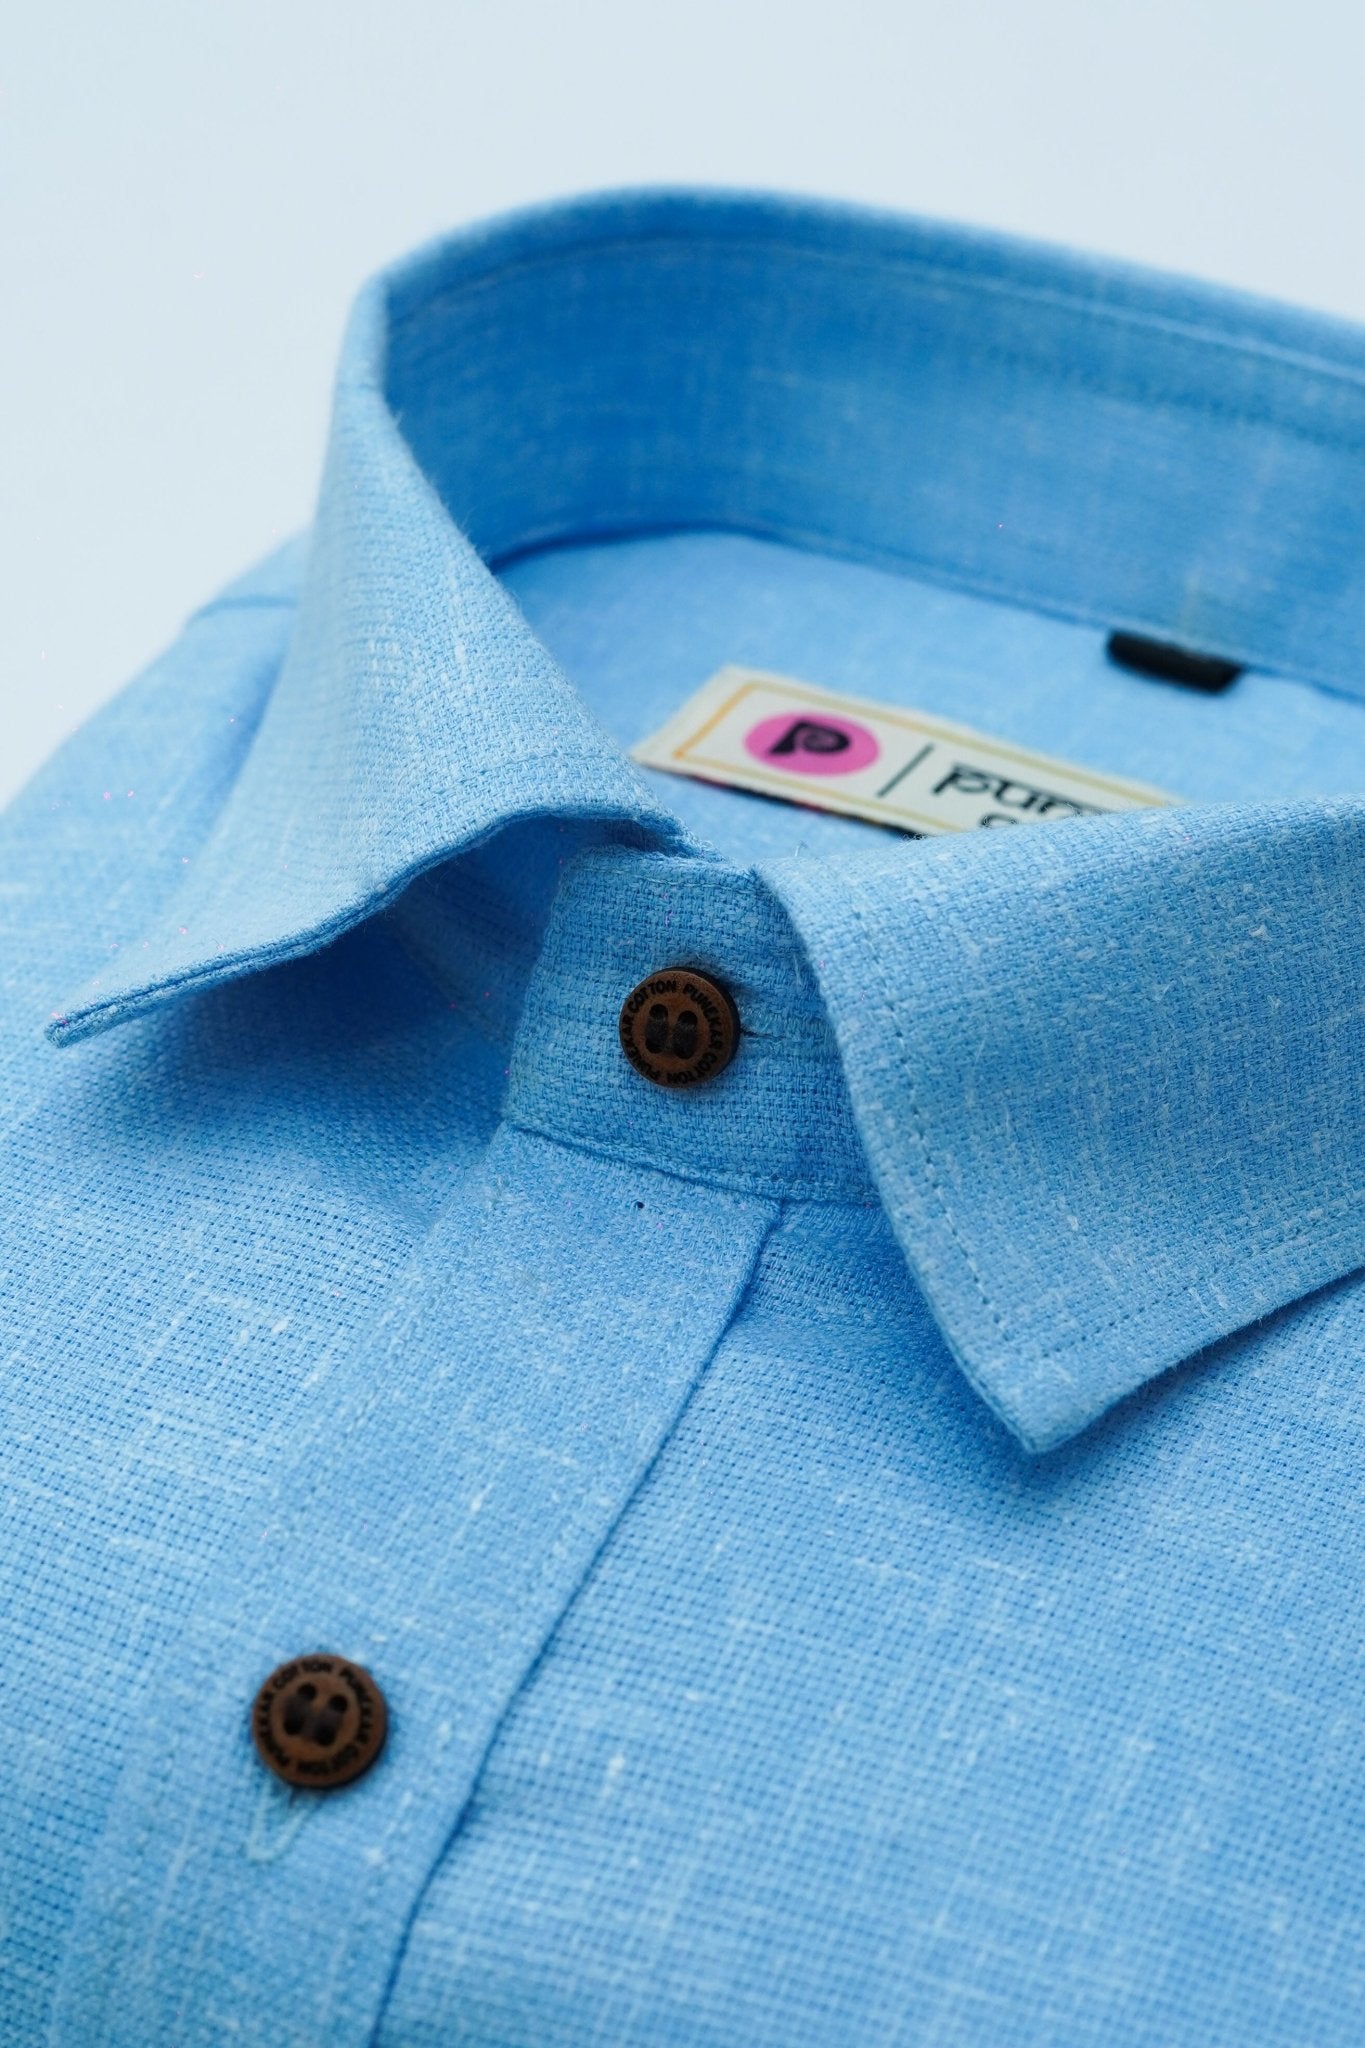 Punekar Cotton Light Blue Color Cotton Linen Formal Shirt for Men's.